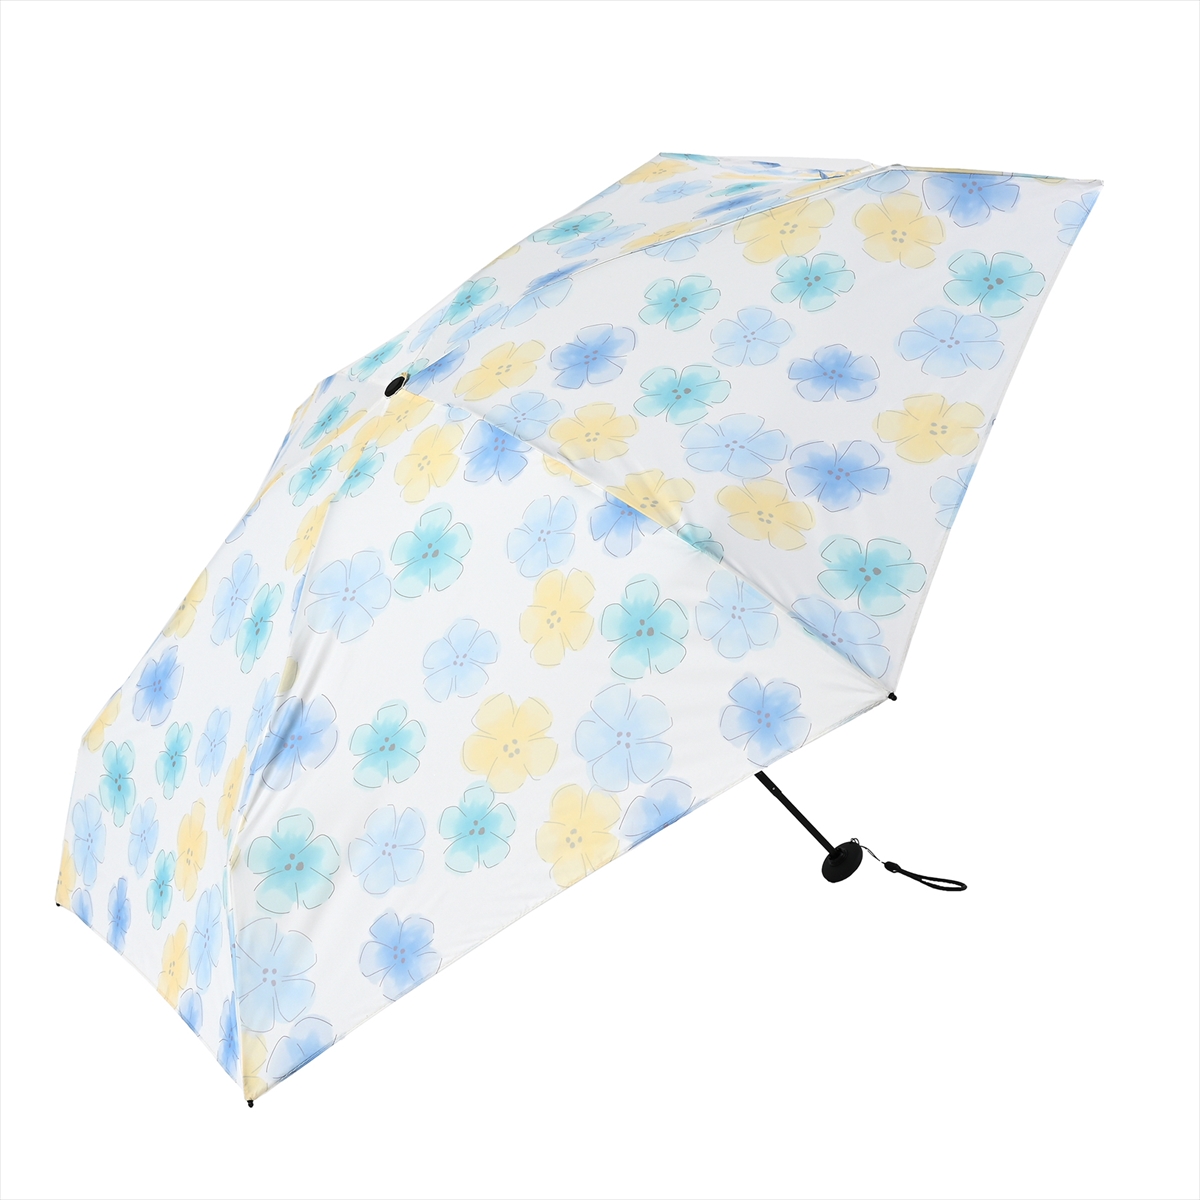 公式 傘 雨傘 日傘 レディース 晴雨兼用 折りたたみ傘 UPF 遮光 遮熱 紫外線対策 ニフティカ...